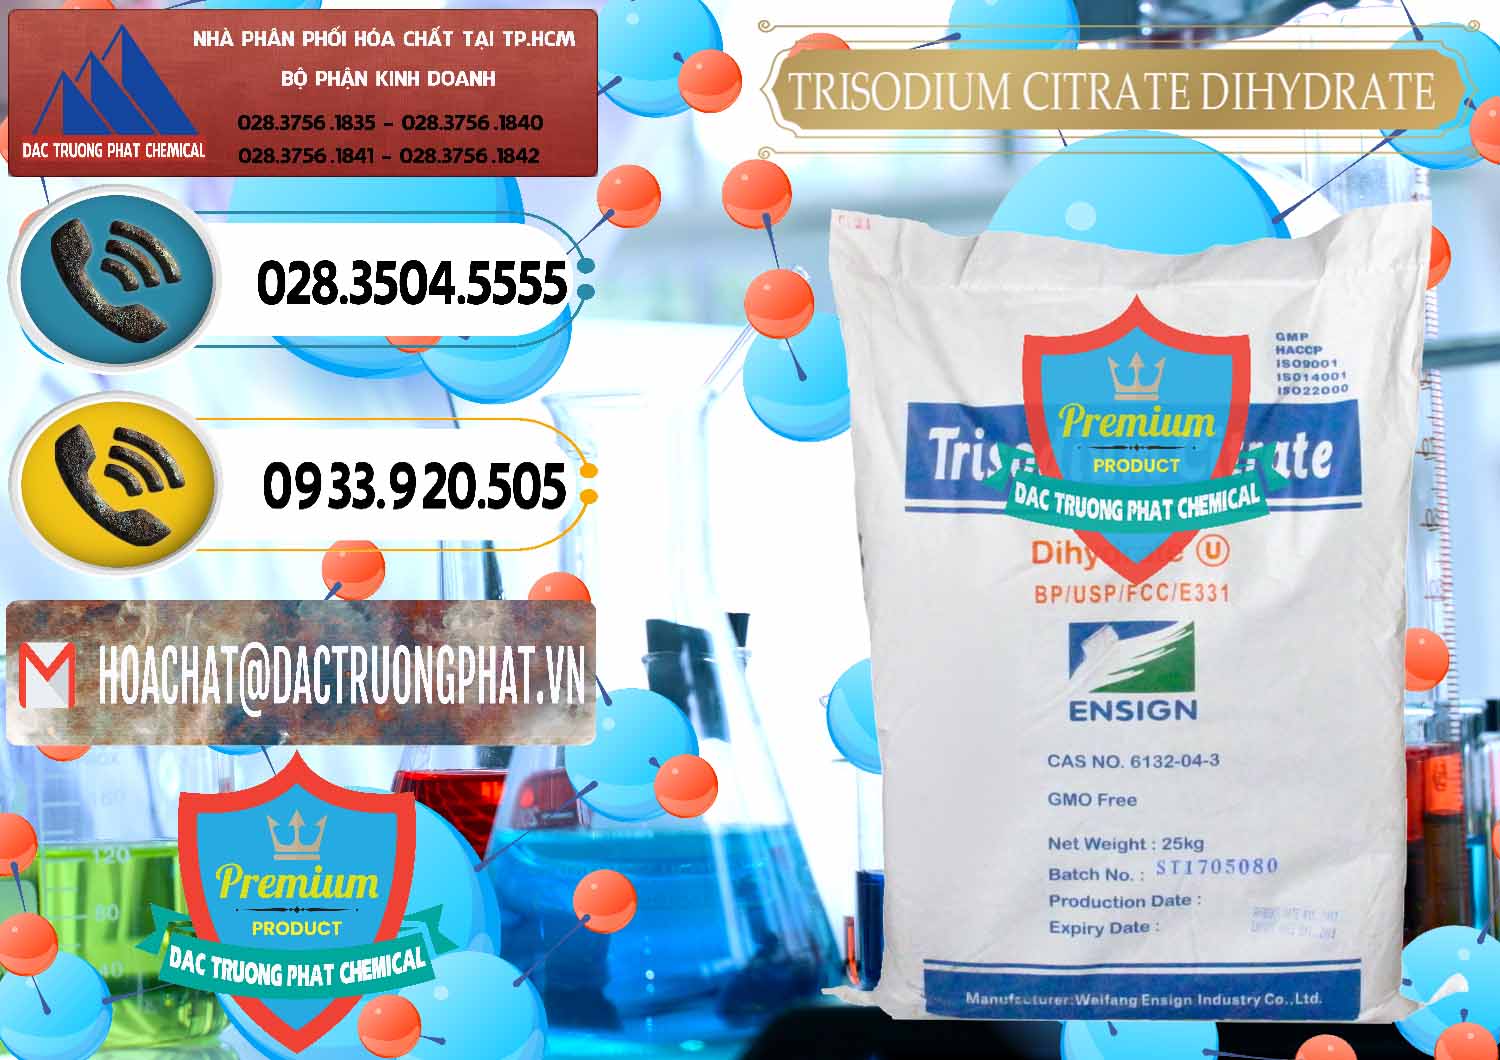 Cty chuyên bán _ phân phối Trisodium Citrate Dihydrate - Na3C6H5O7 Weifang Trung Quốc China - 0324 - Cty nhập khẩu - phân phối hóa chất tại TP.HCM - hoachatdetnhuom.vn